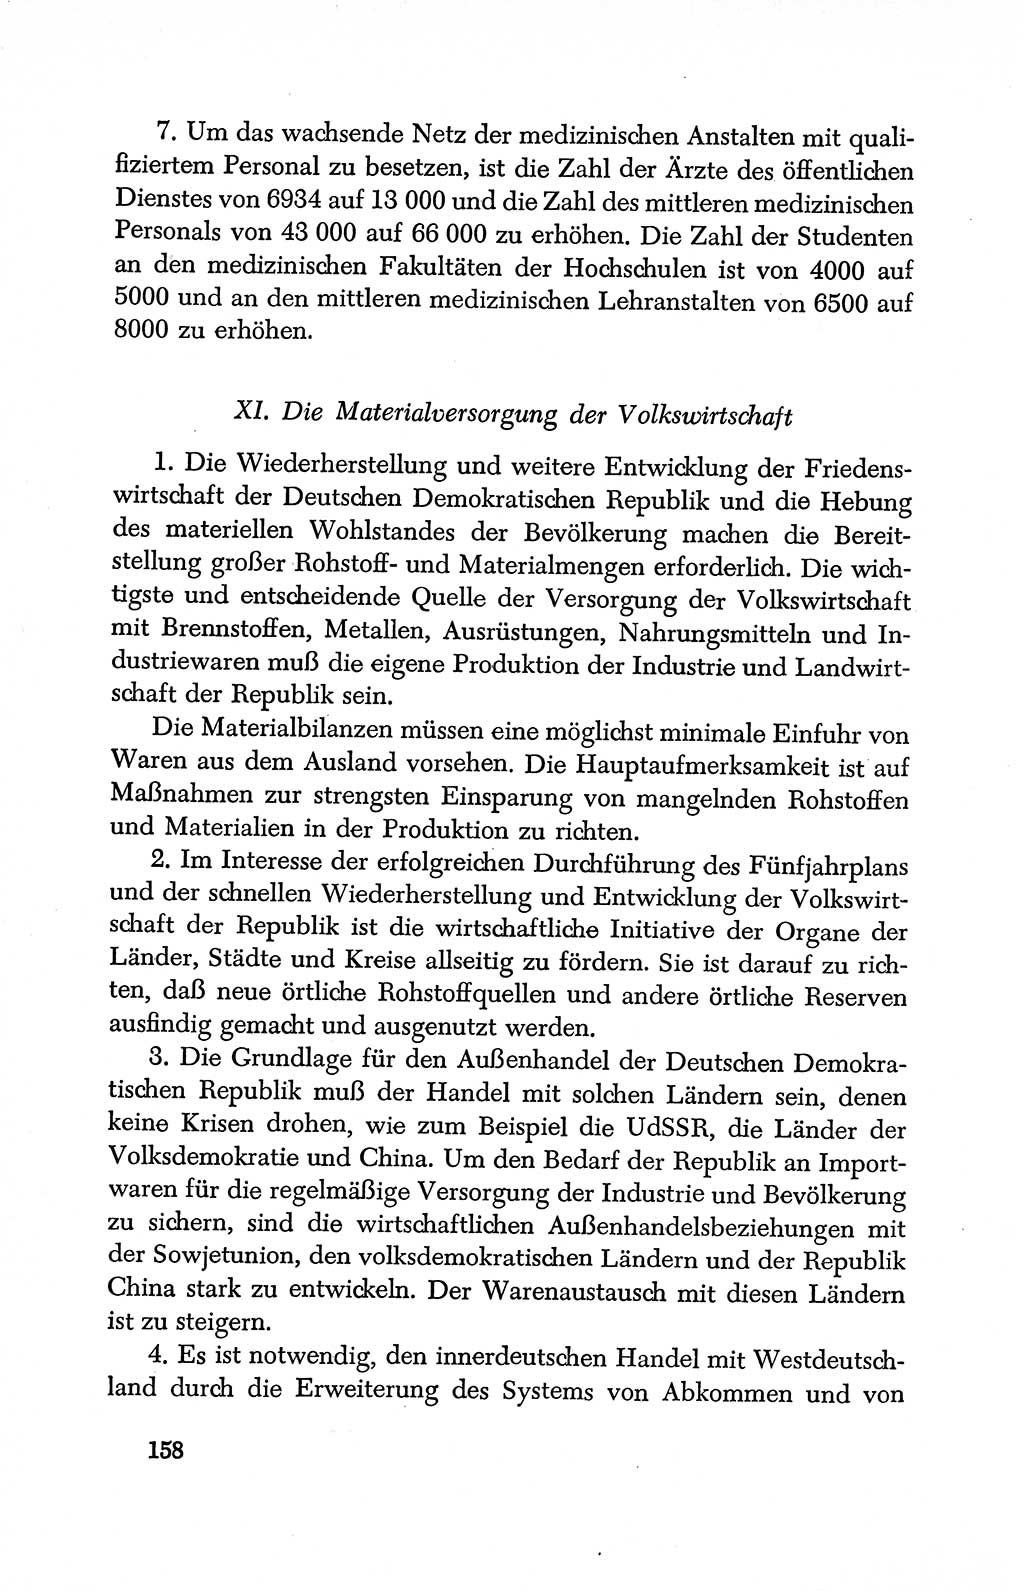 Dokumente der Sozialistischen Einheitspartei Deutschlands (SED) [Deutsche Demokratische Republik (DDR)] 1950-1952, Seite 158 (Dok. SED DDR 1950-1952, S. 158)